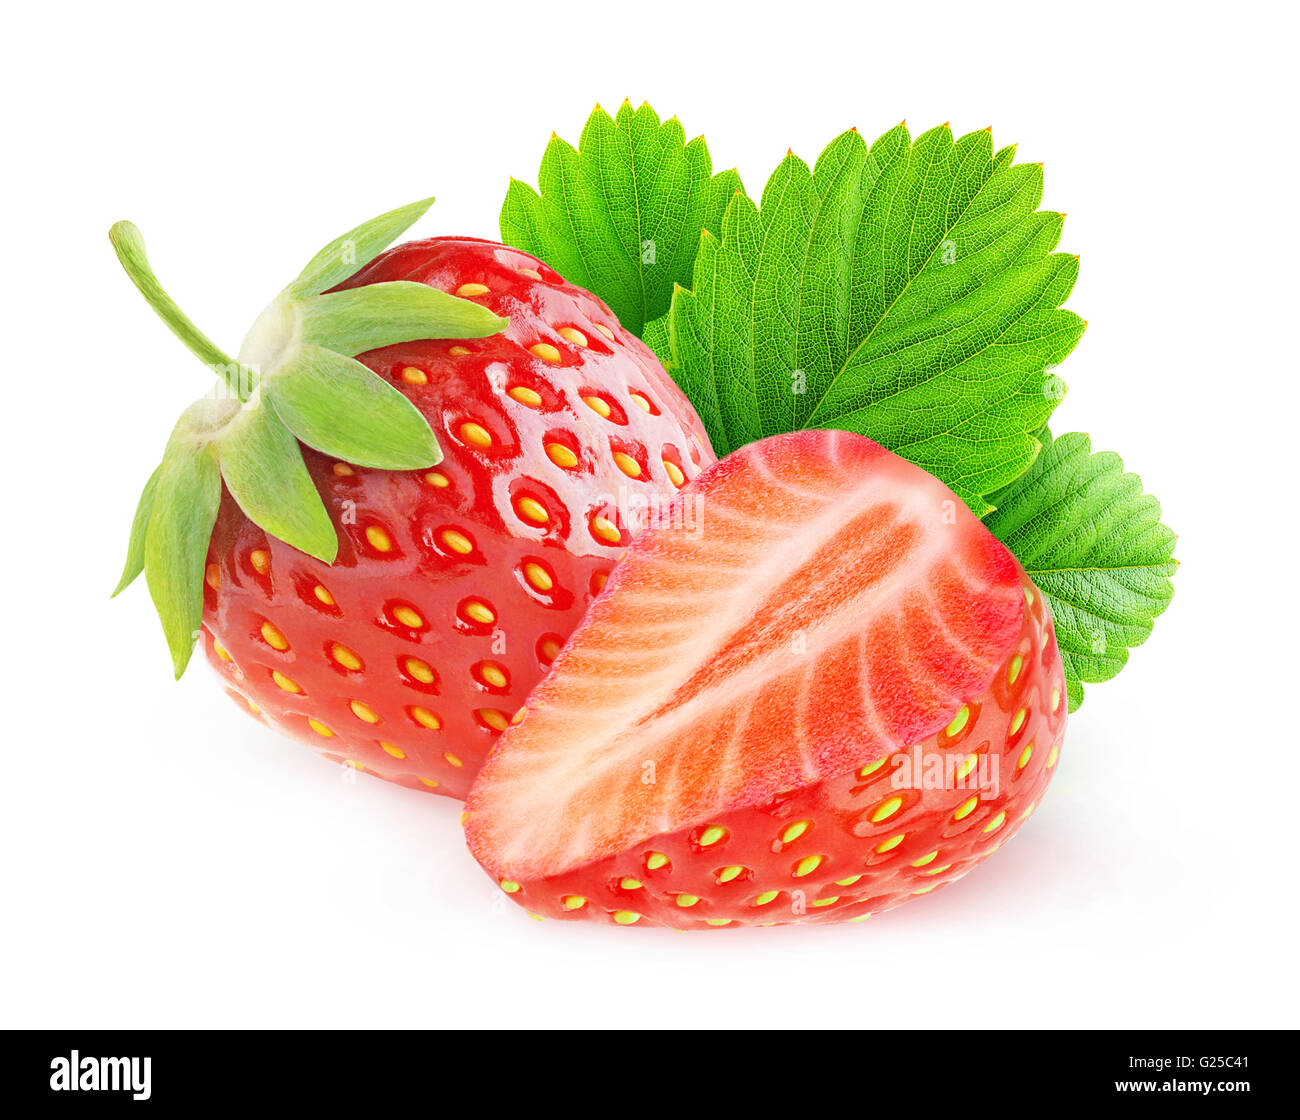 Couper les fraises. isolé Deux fraises isolé sur fond blanc avec clipping path Banque D'Images